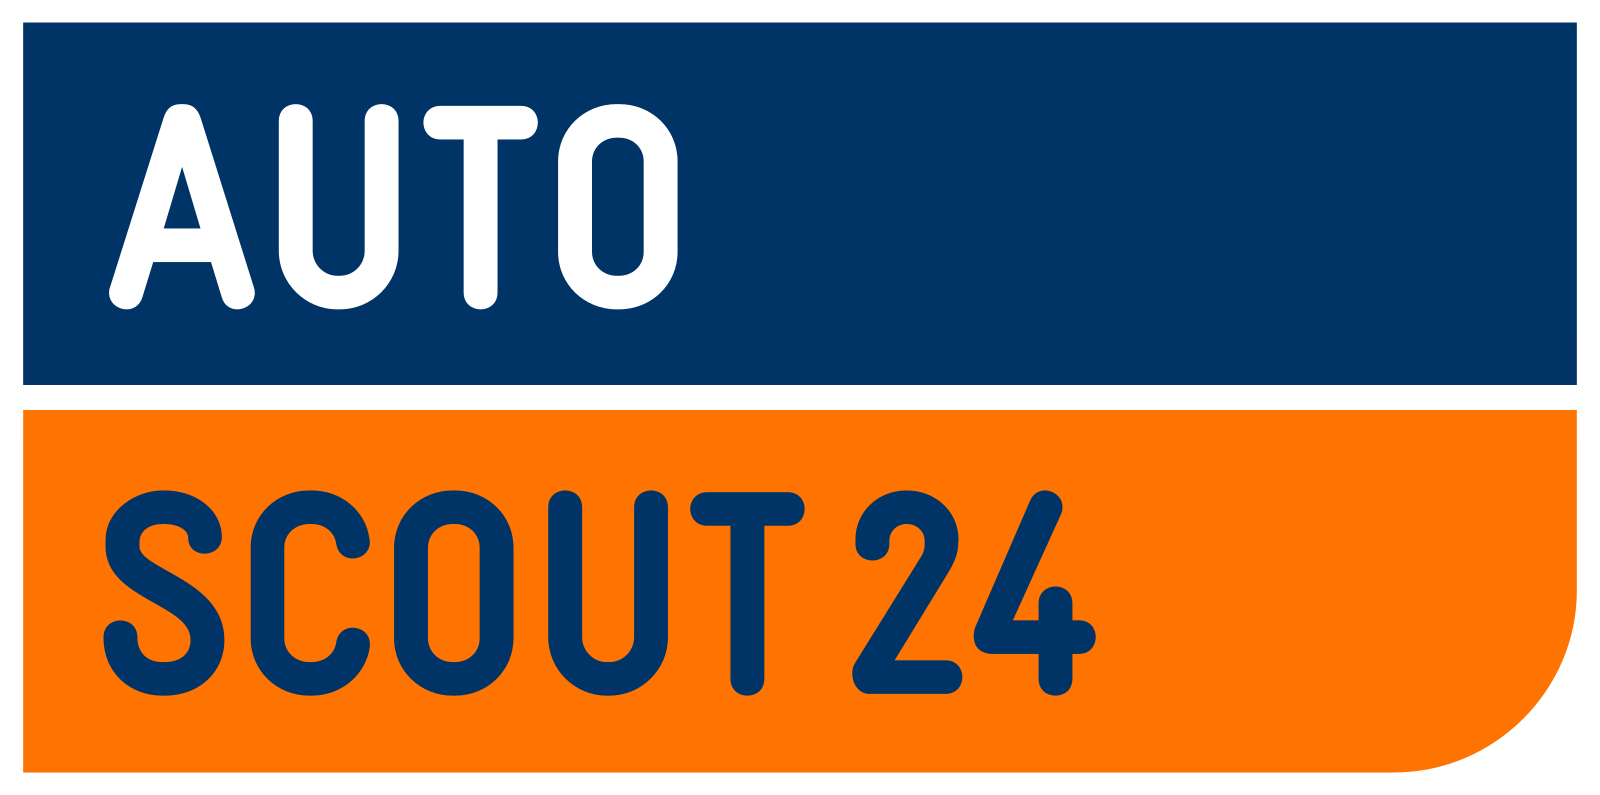 File:AutoScout24 logo.svg.